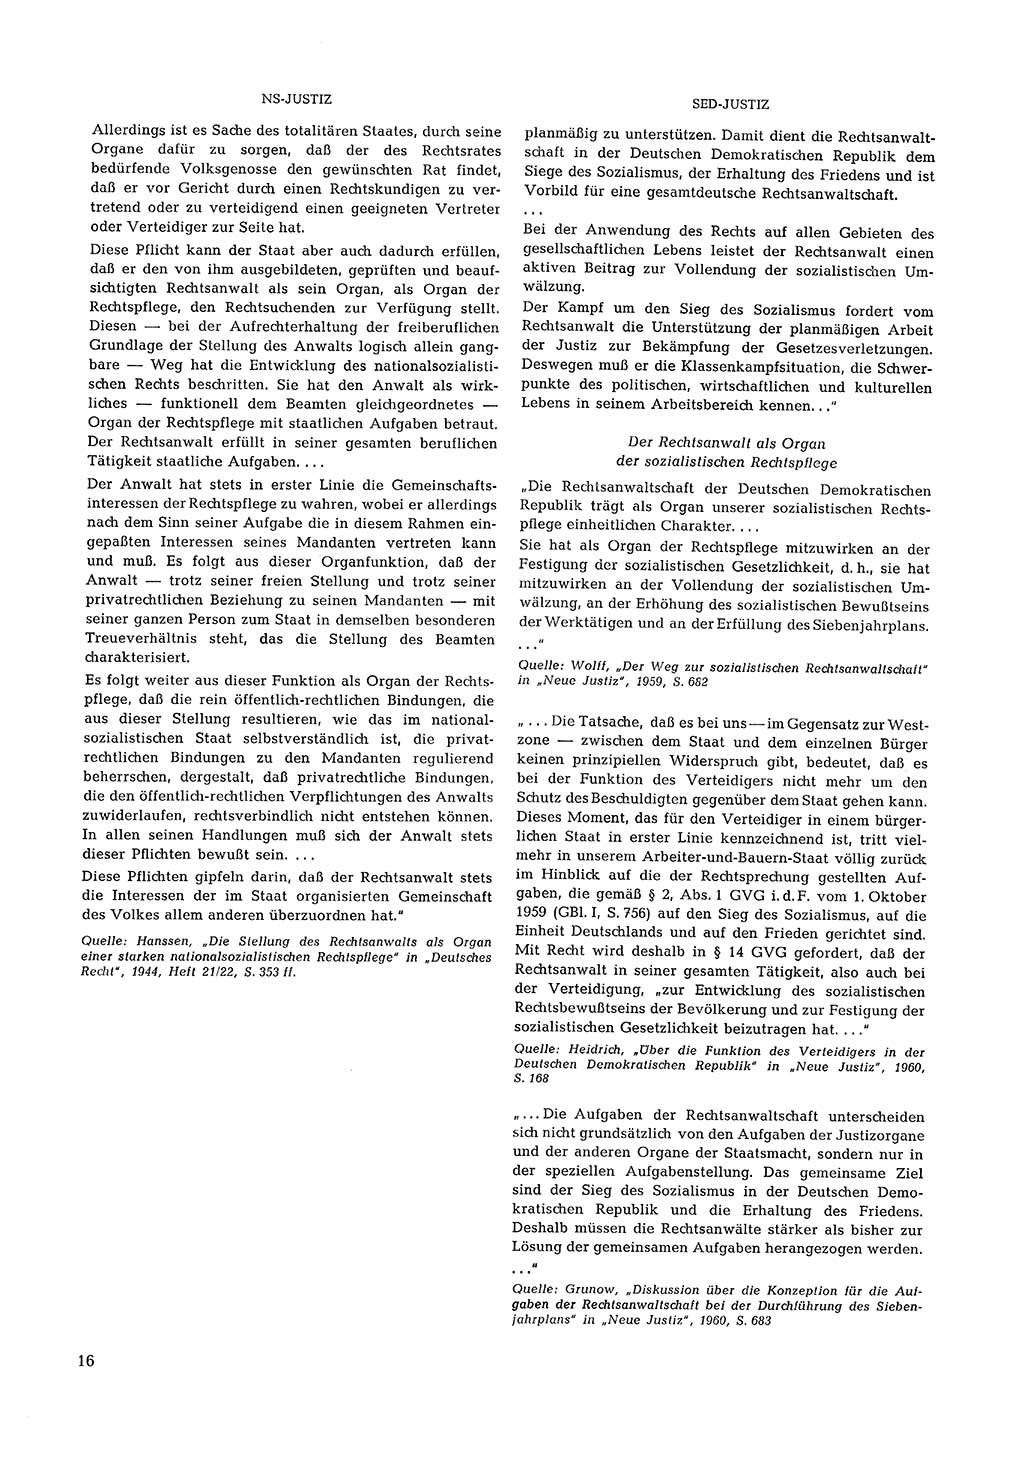 Partei-Justiz, Dokumentation über den nationalsozialistischen und kommunistischen Rechtsmißbrauch in Deutschland 1933-1963, Seite 16 (Part.-Just. Dtl. natsoz. komm. 1933-1963, S. 16)